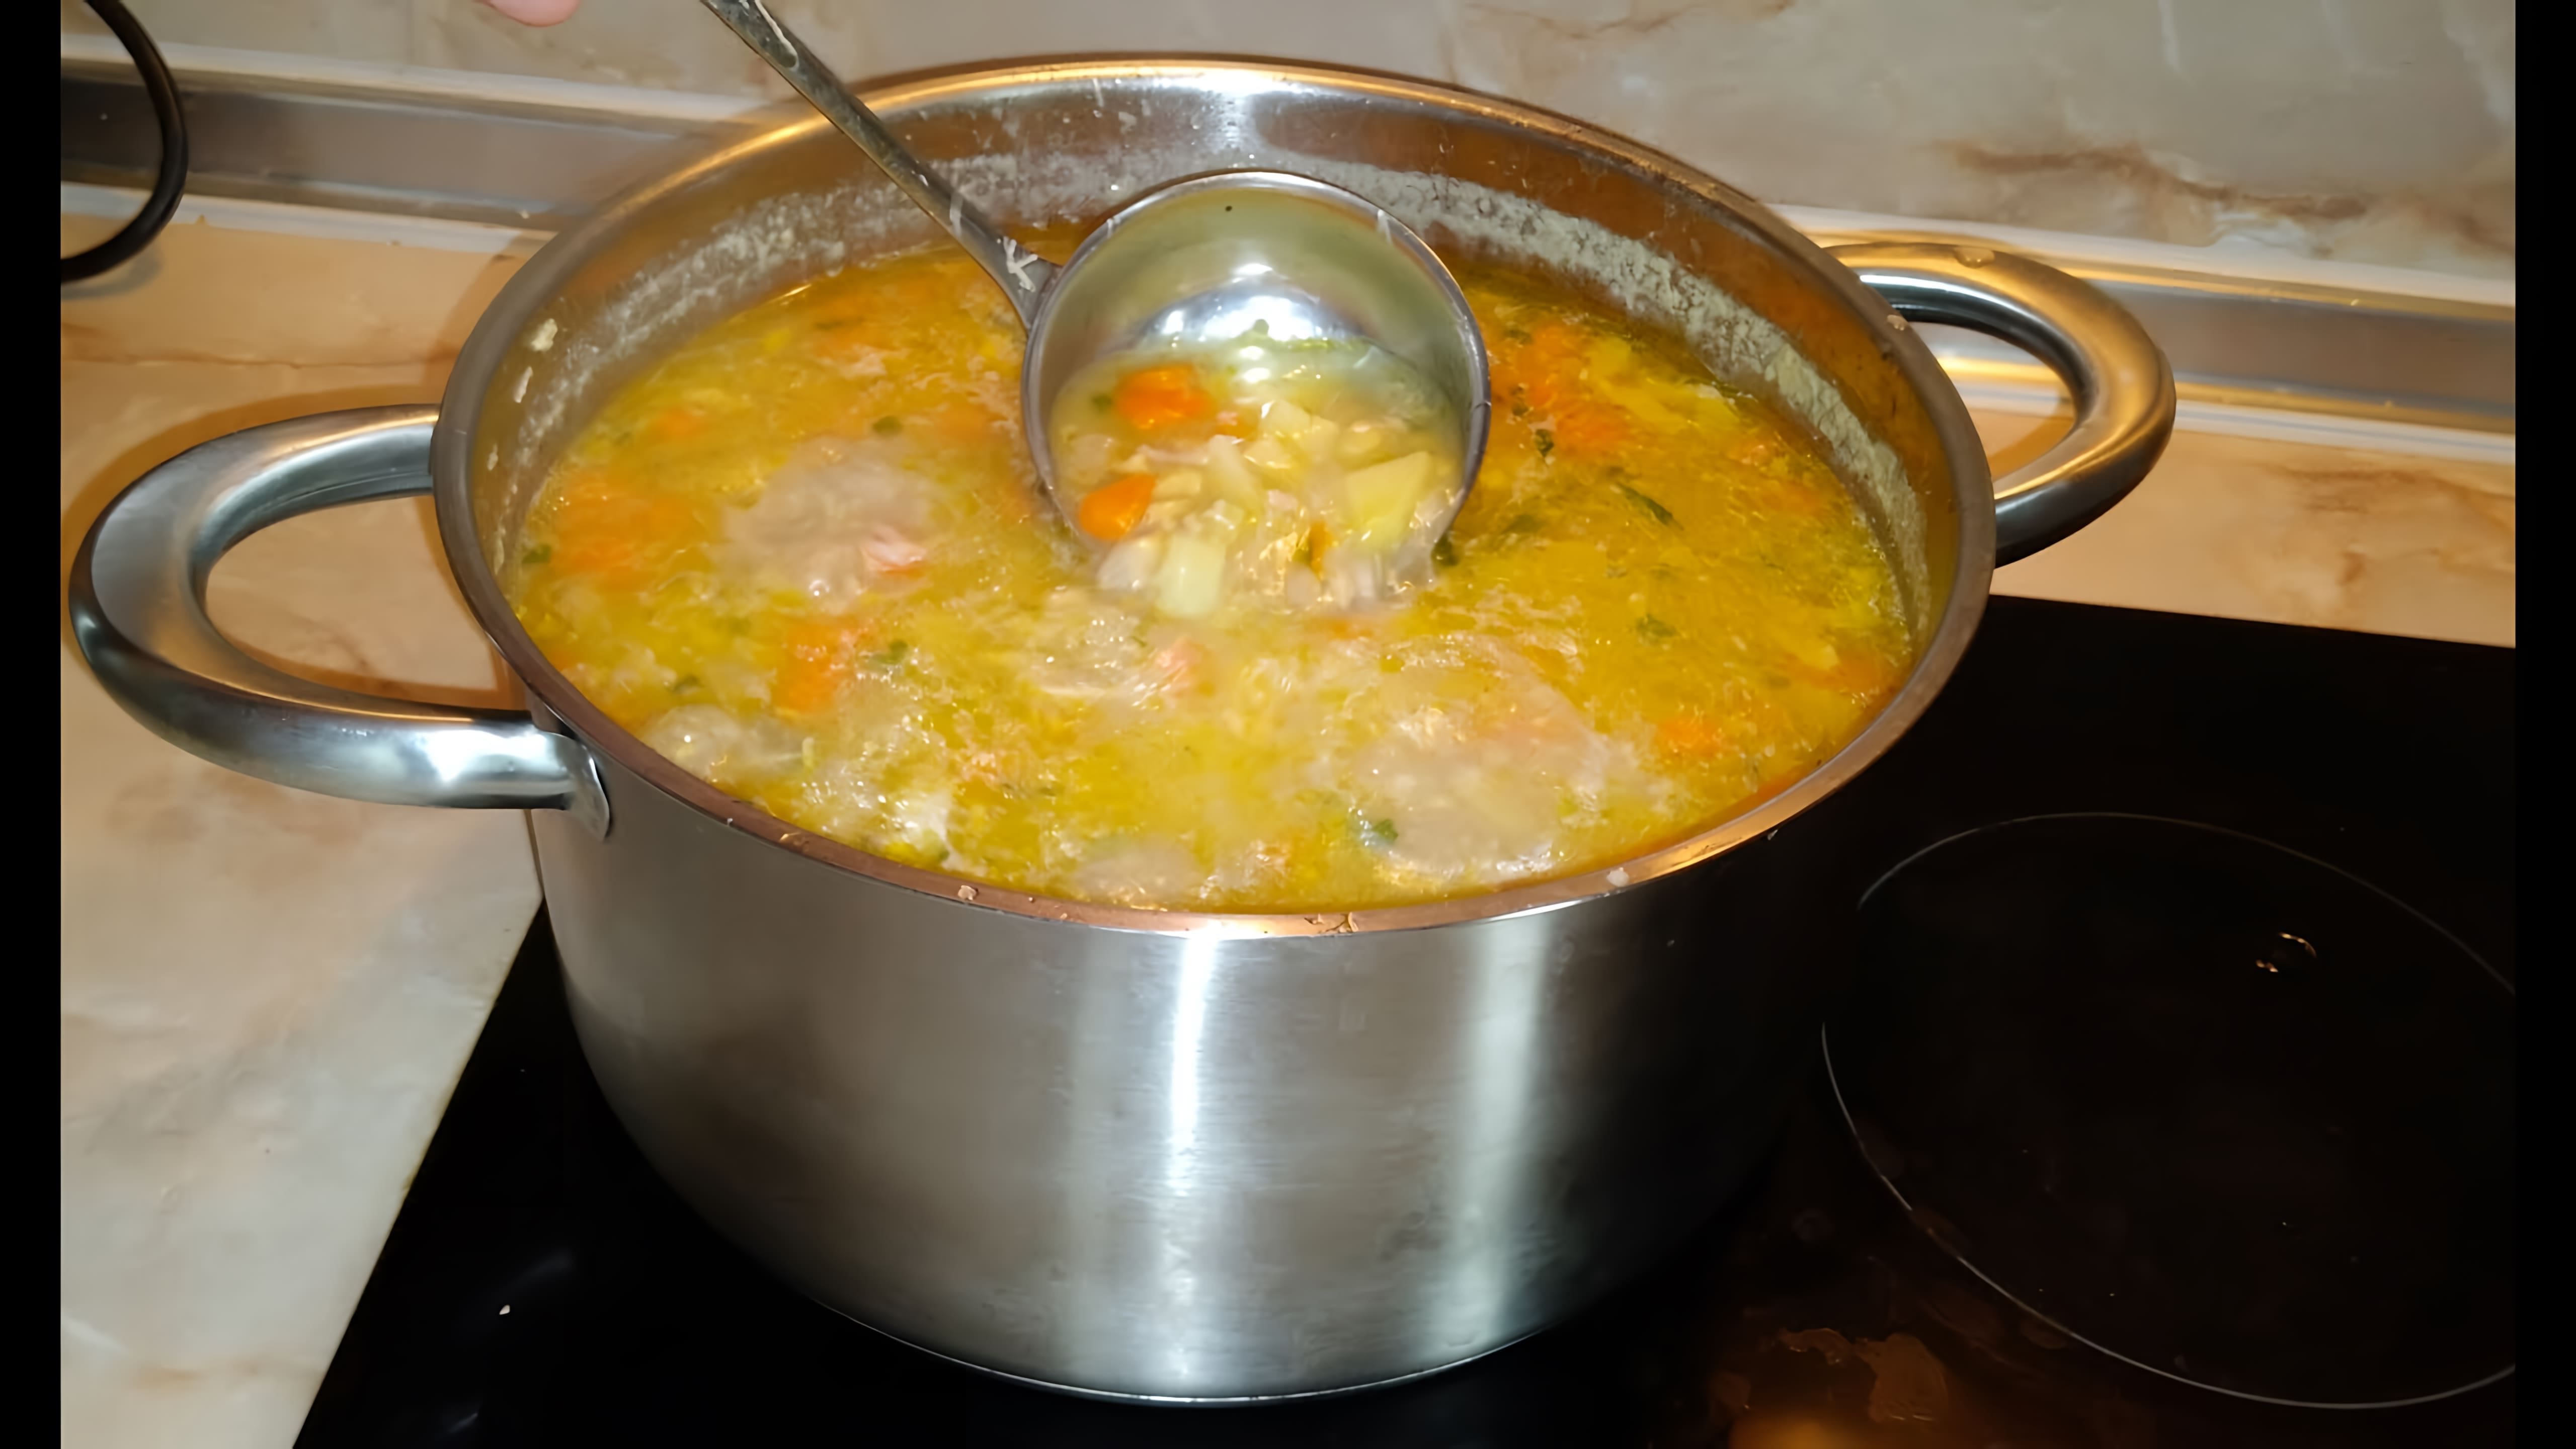 "Пилешка супа без застройка" - это видео-ролик, который показывает, как можно приготовить вкусный суп без использования застройки